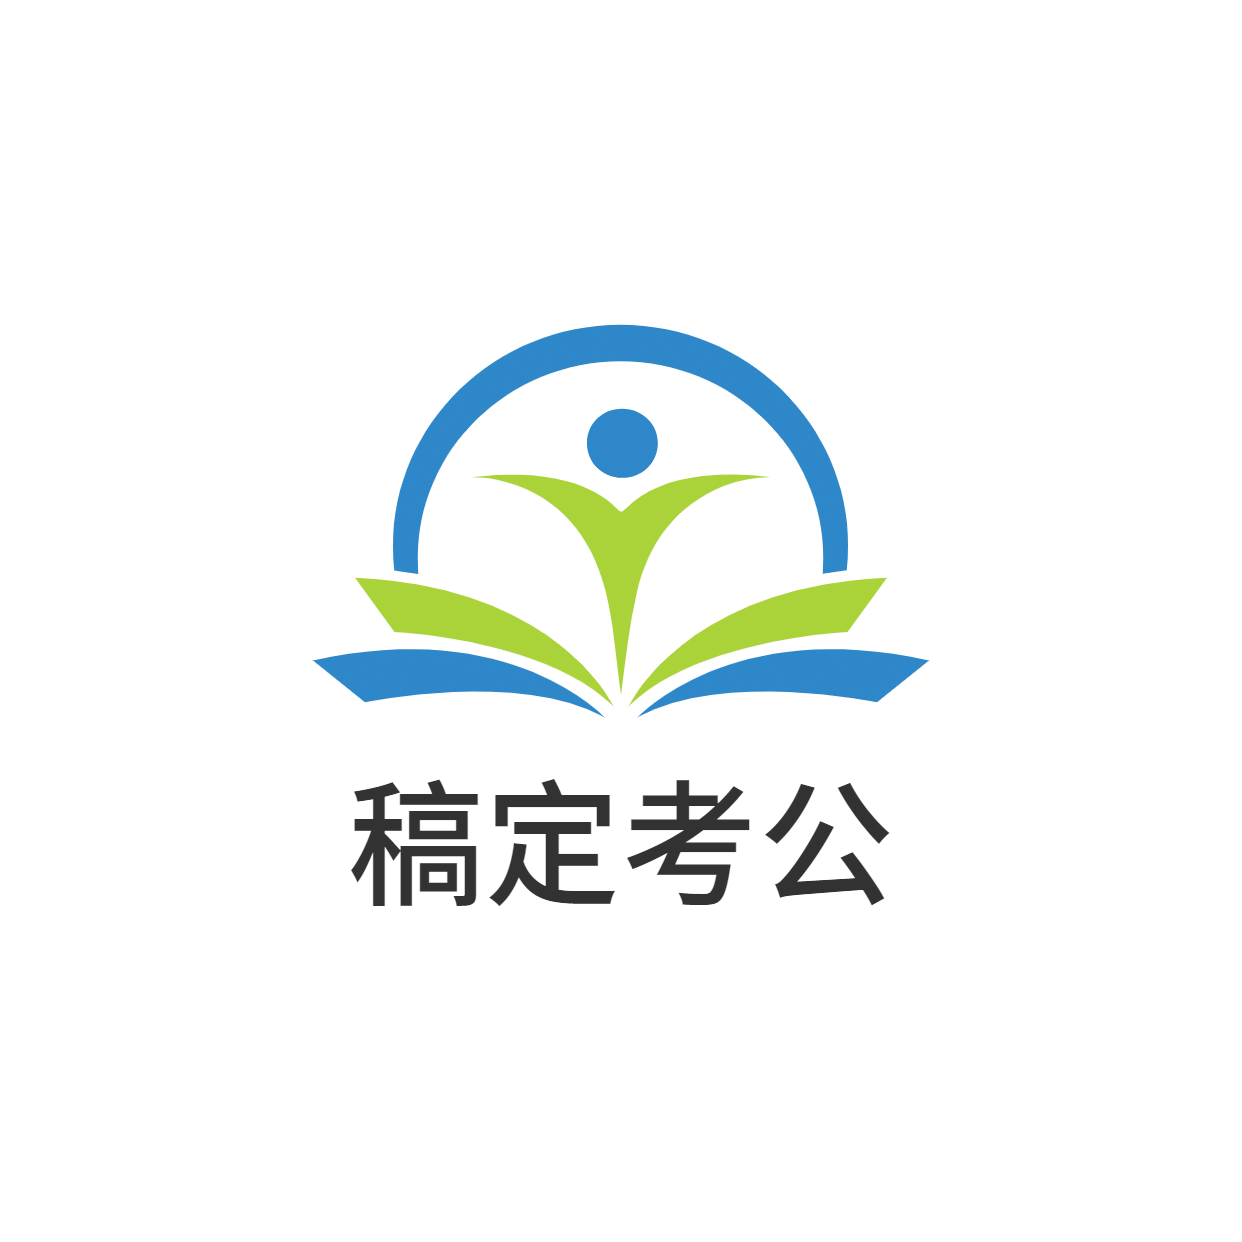 教育考公图形中国风logo